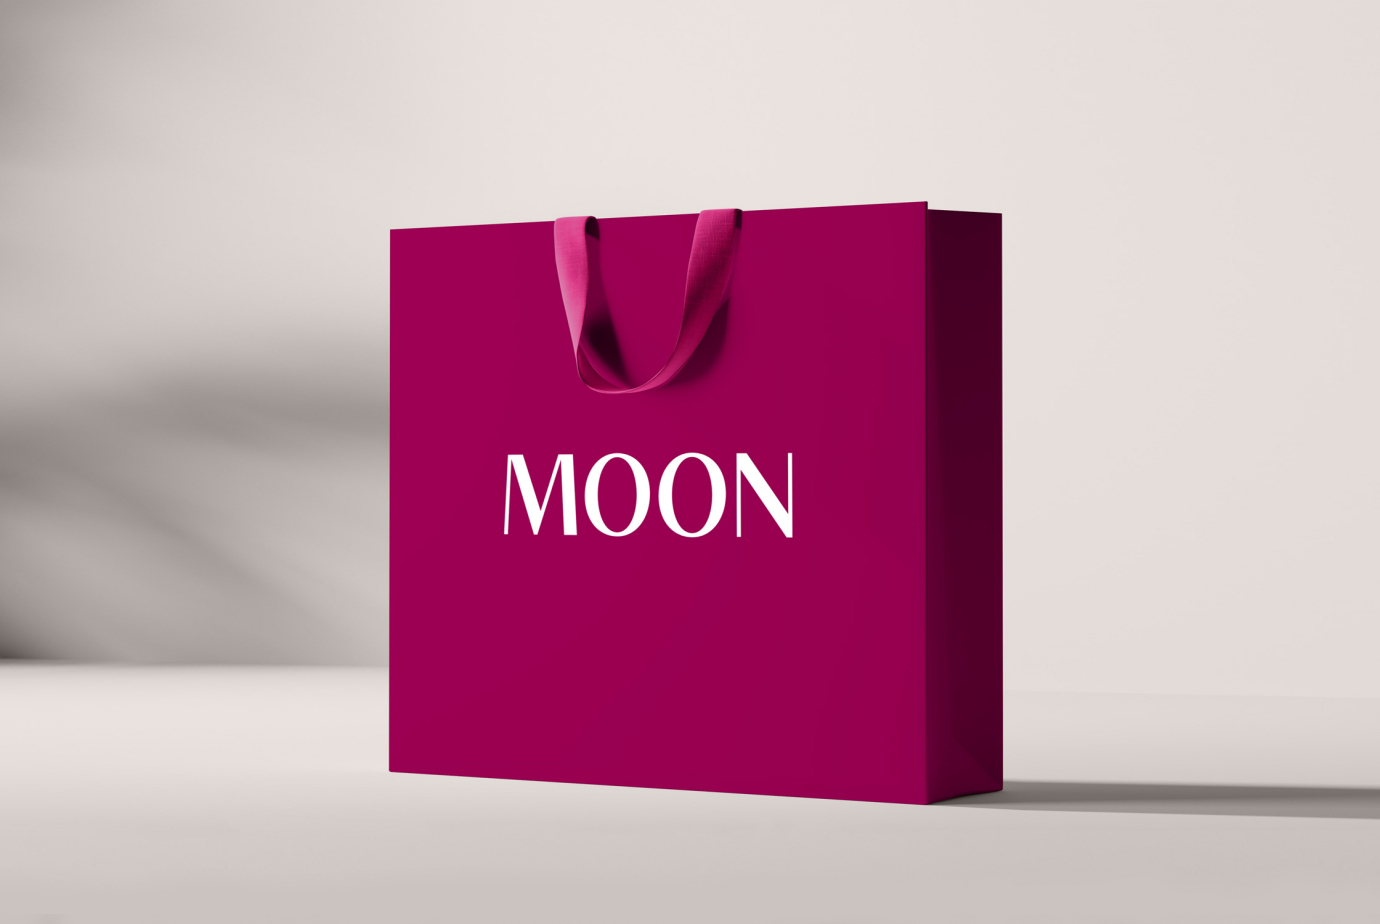 Разработка дополнительных элементов фирменного стиля, подарочного пакета, для бренда Moon